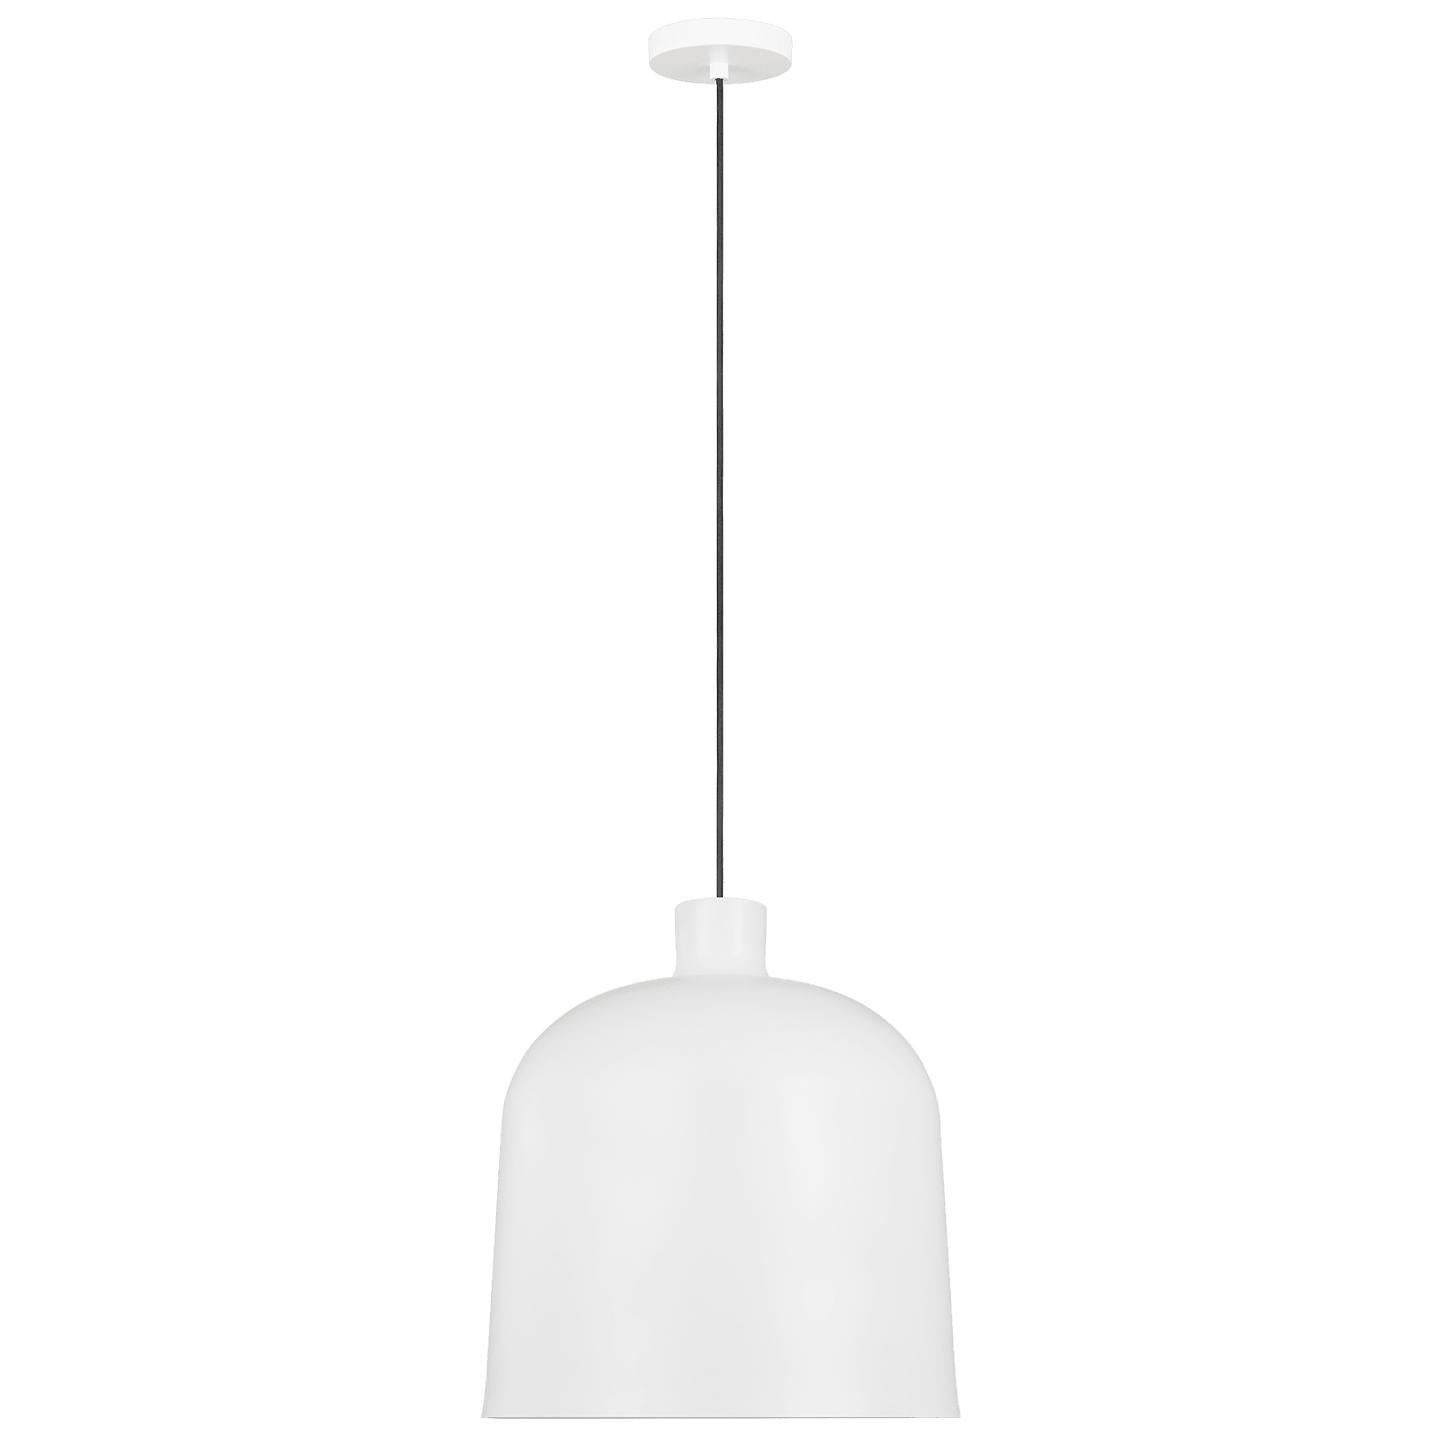 Купить Подвесной светильник Foundry Pendant в интернет-магазине roooms.ru